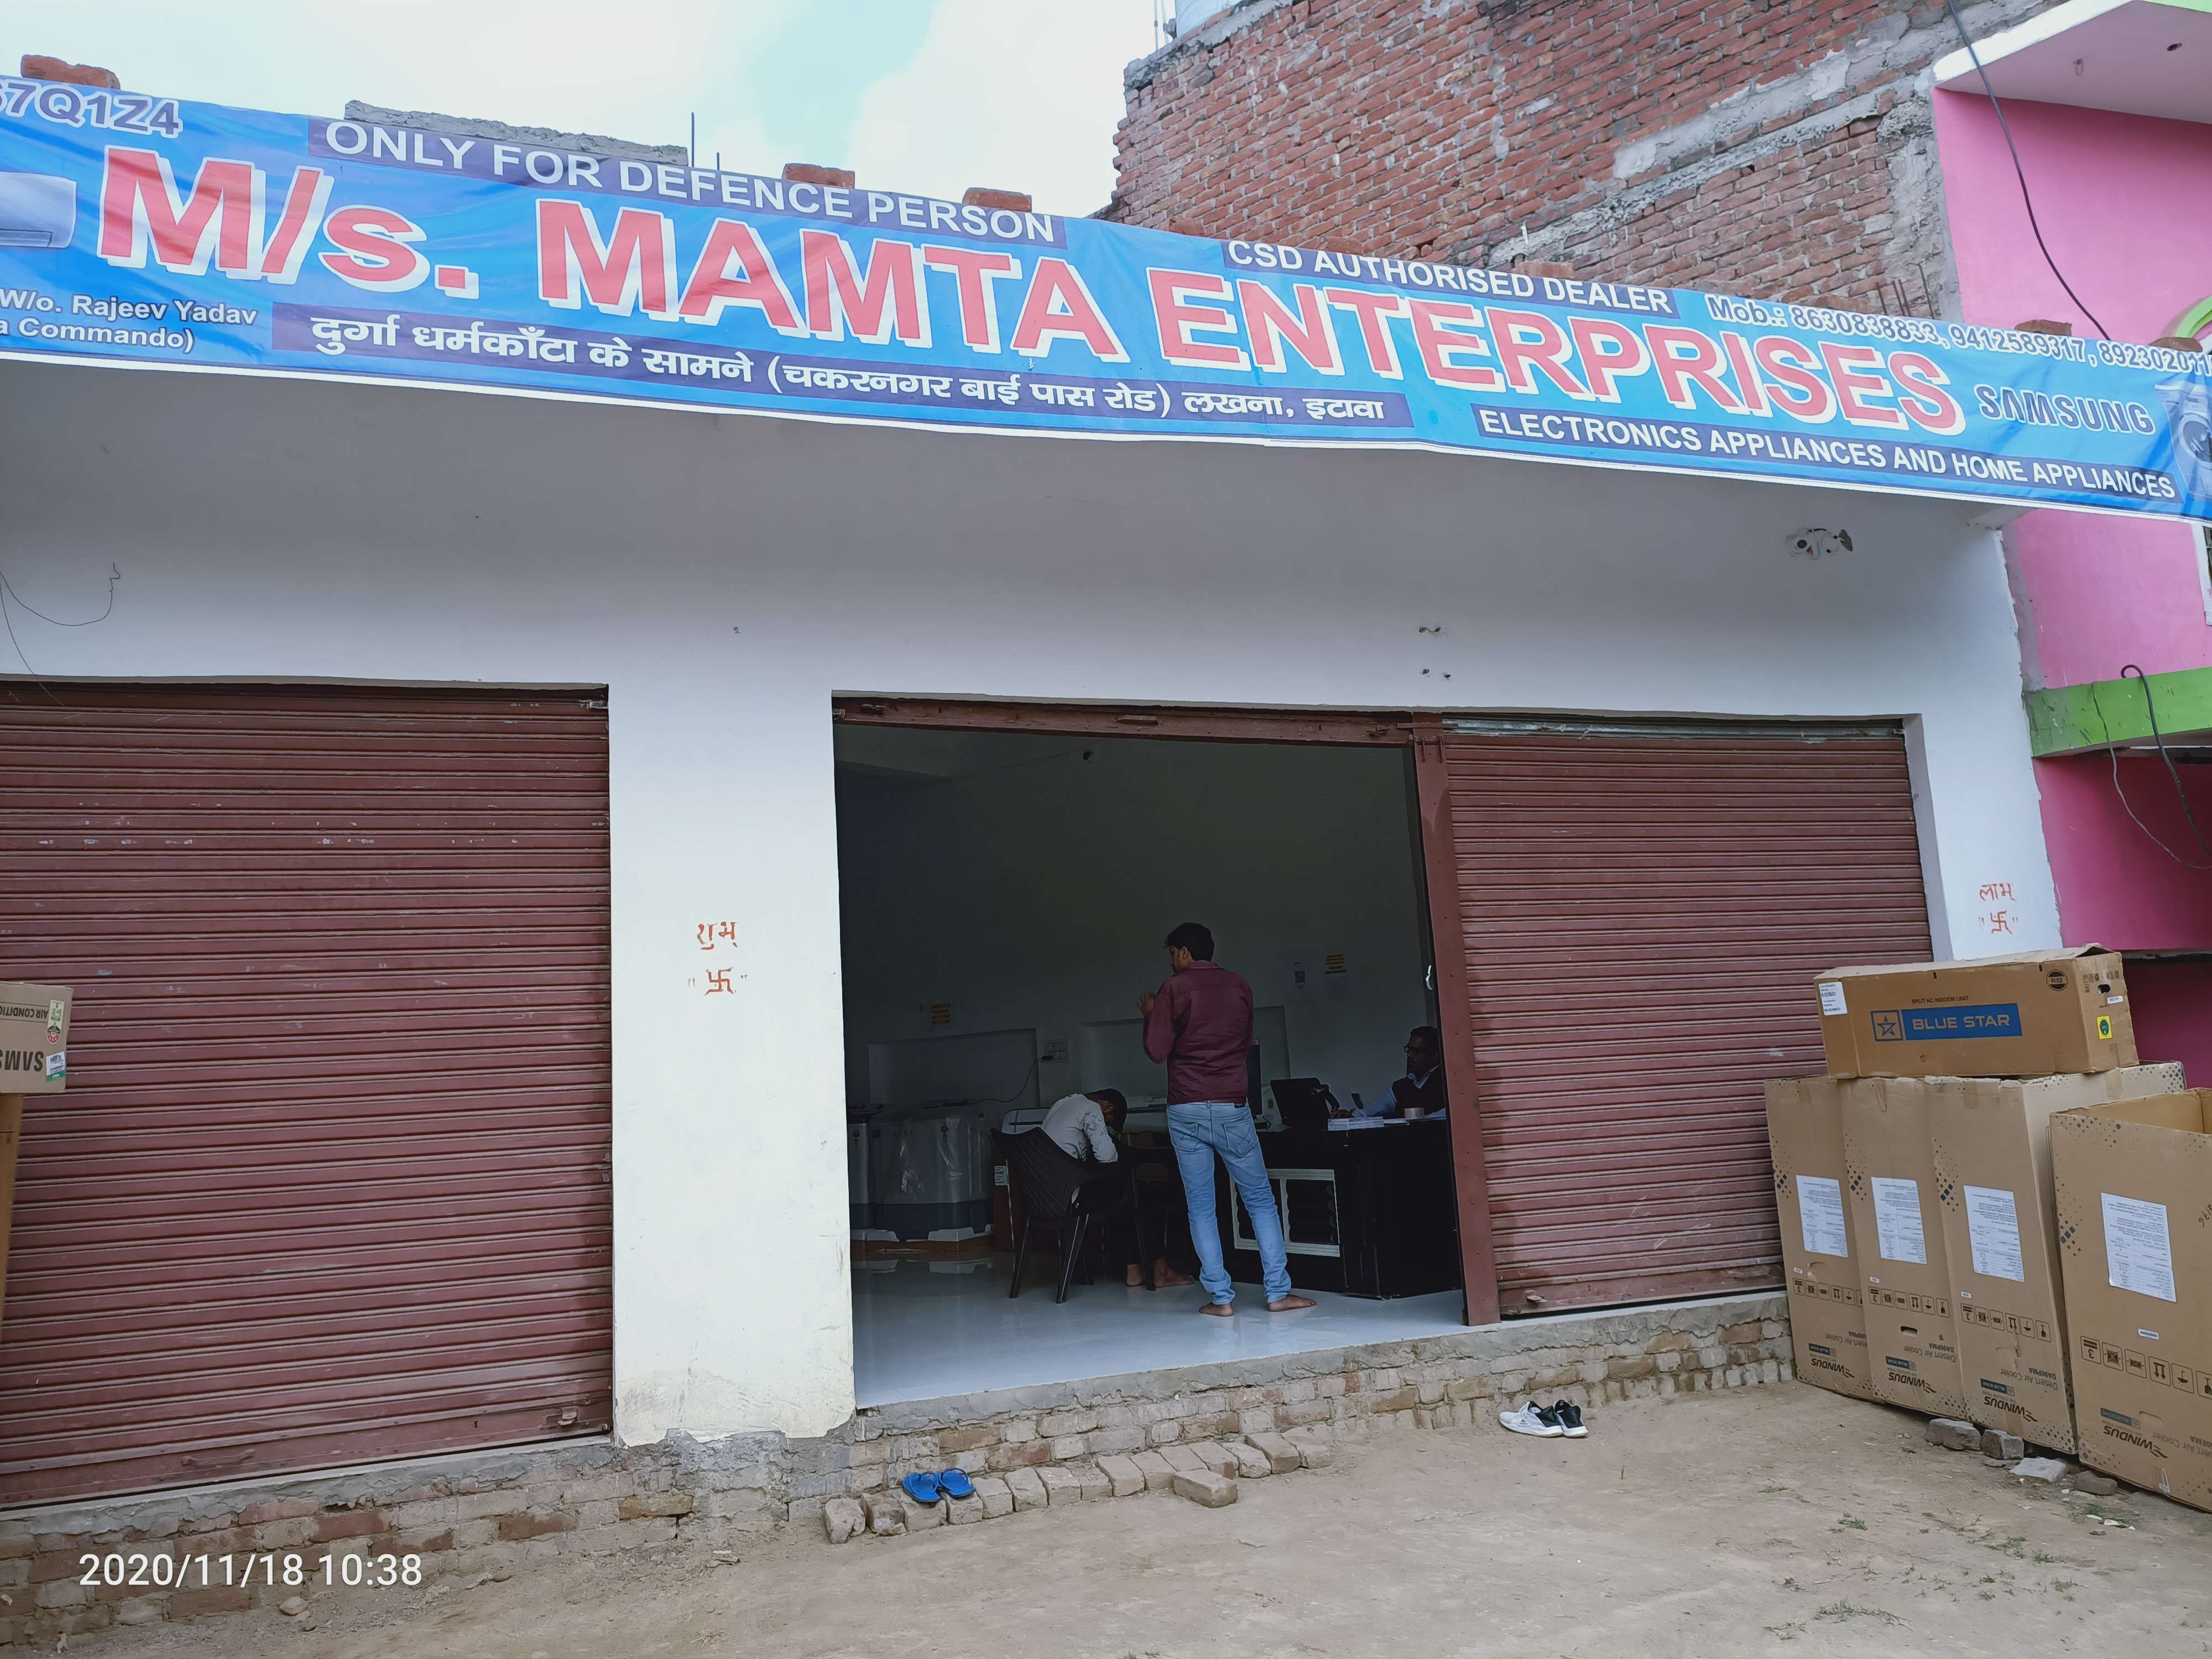 Mamata Enterprises Lakhna Etawah